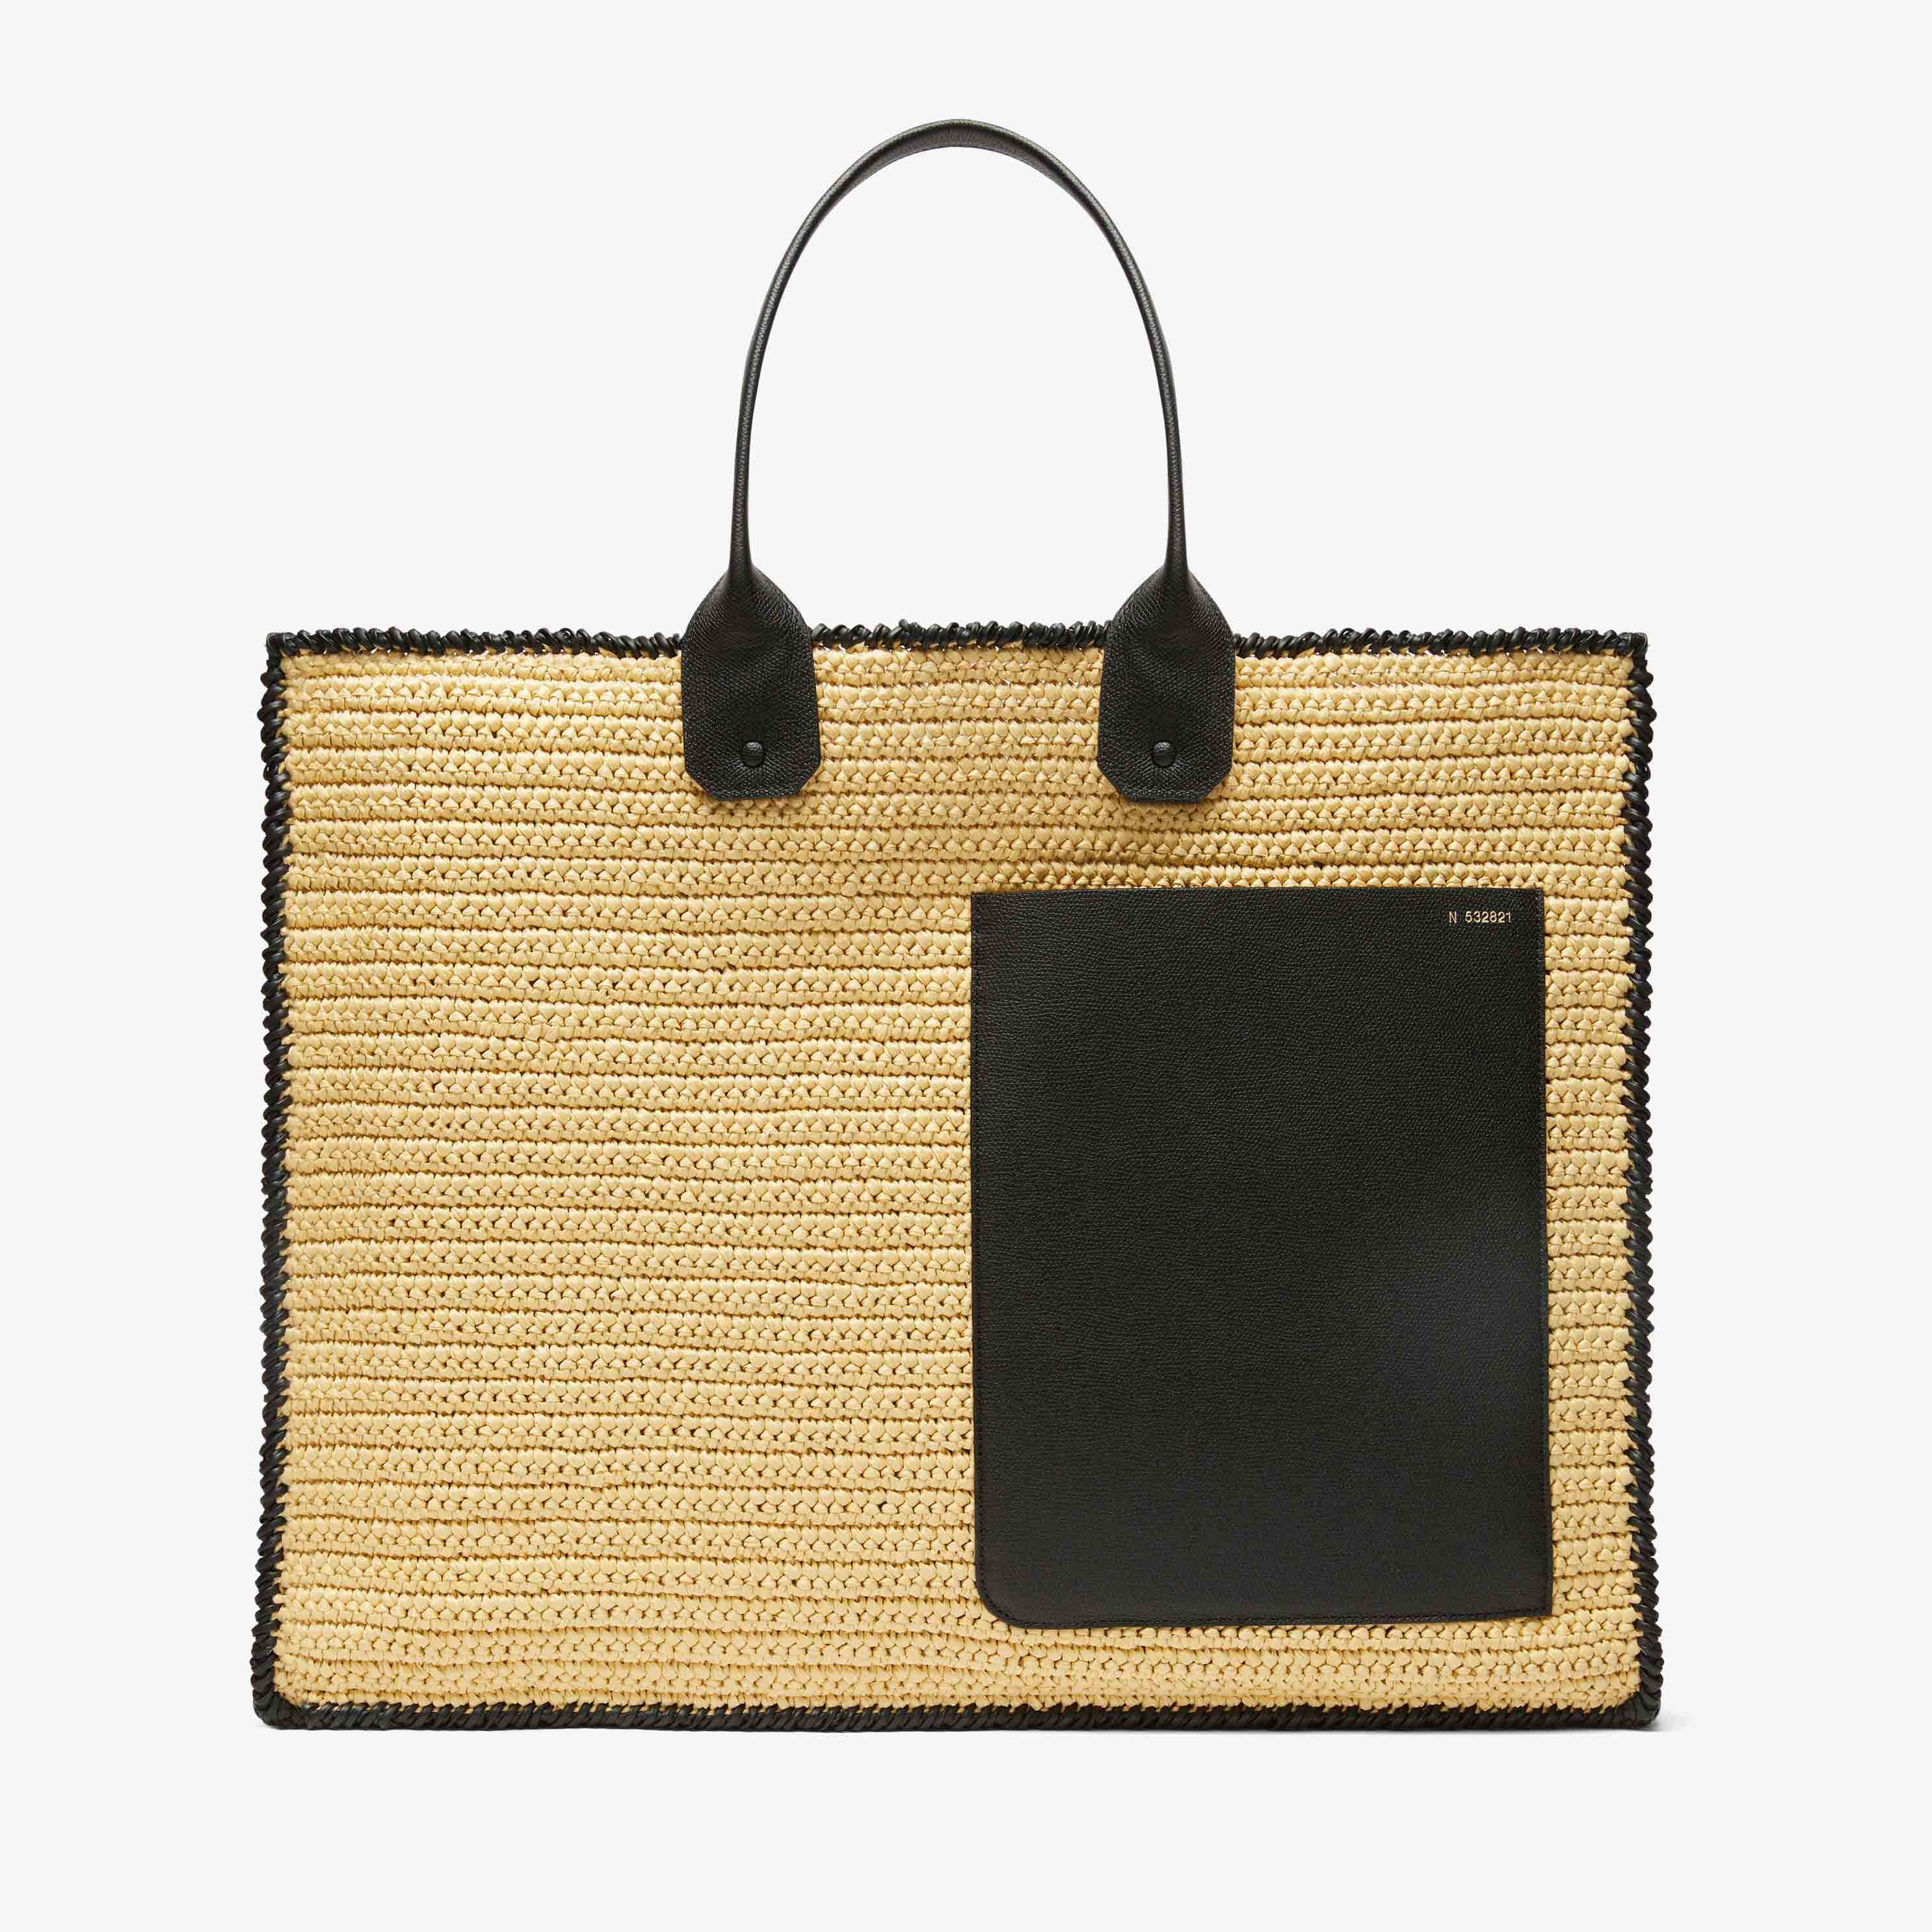 Soft Tote Raffia Crochet maxi bag - Beige/Black - Rafia/Vitello VS - Valextra - 1